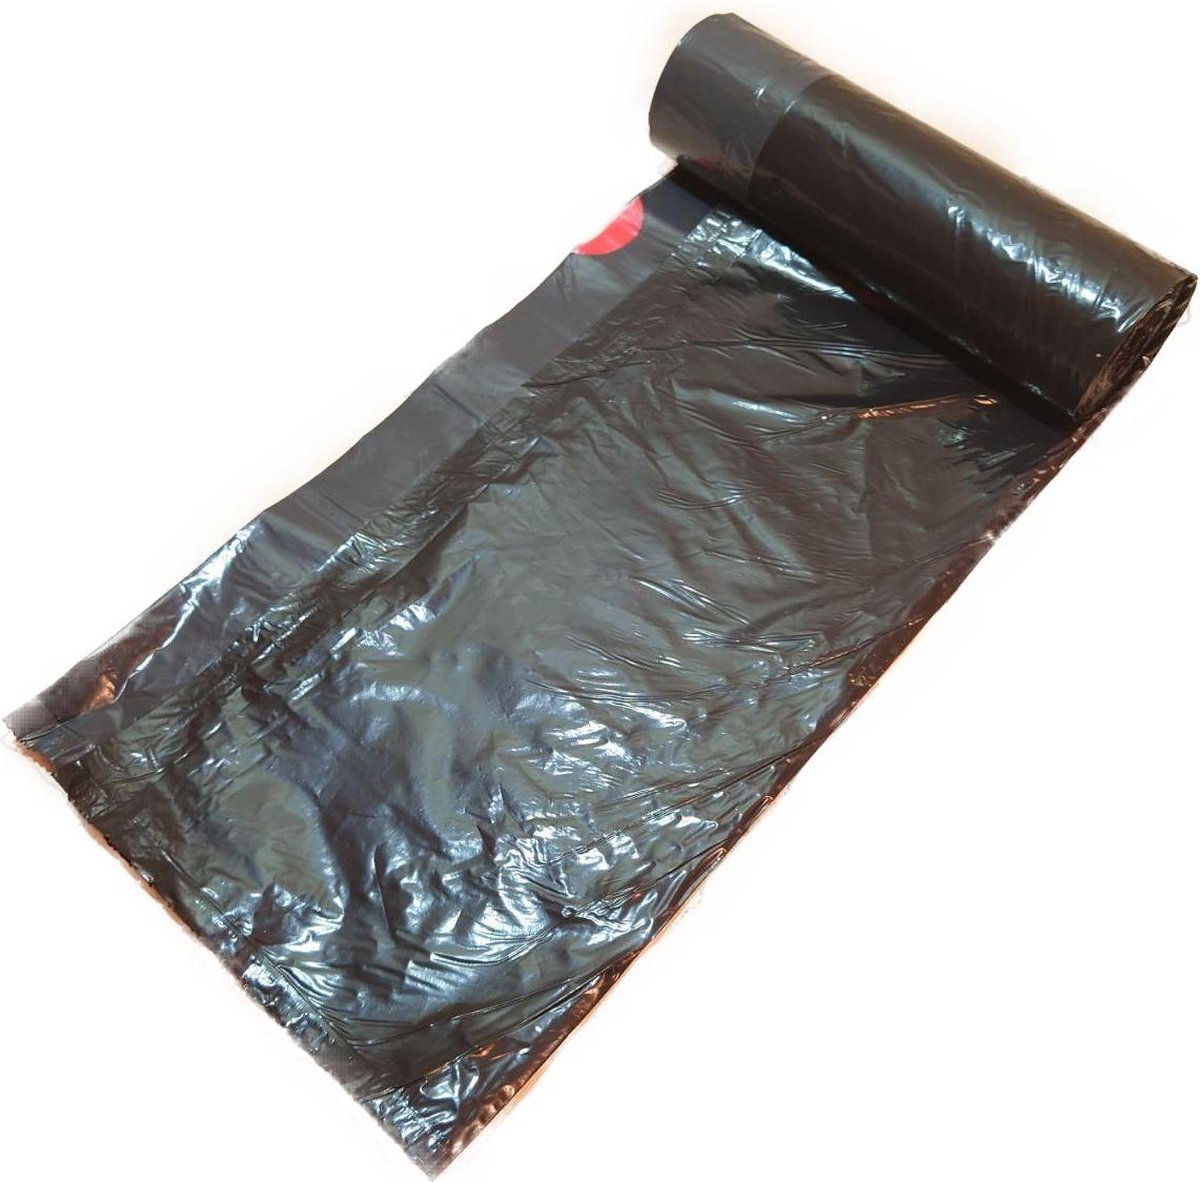 BagFitter Rose Un sac poubelle 35L-50L avec cordon de serrage en plastique  100%